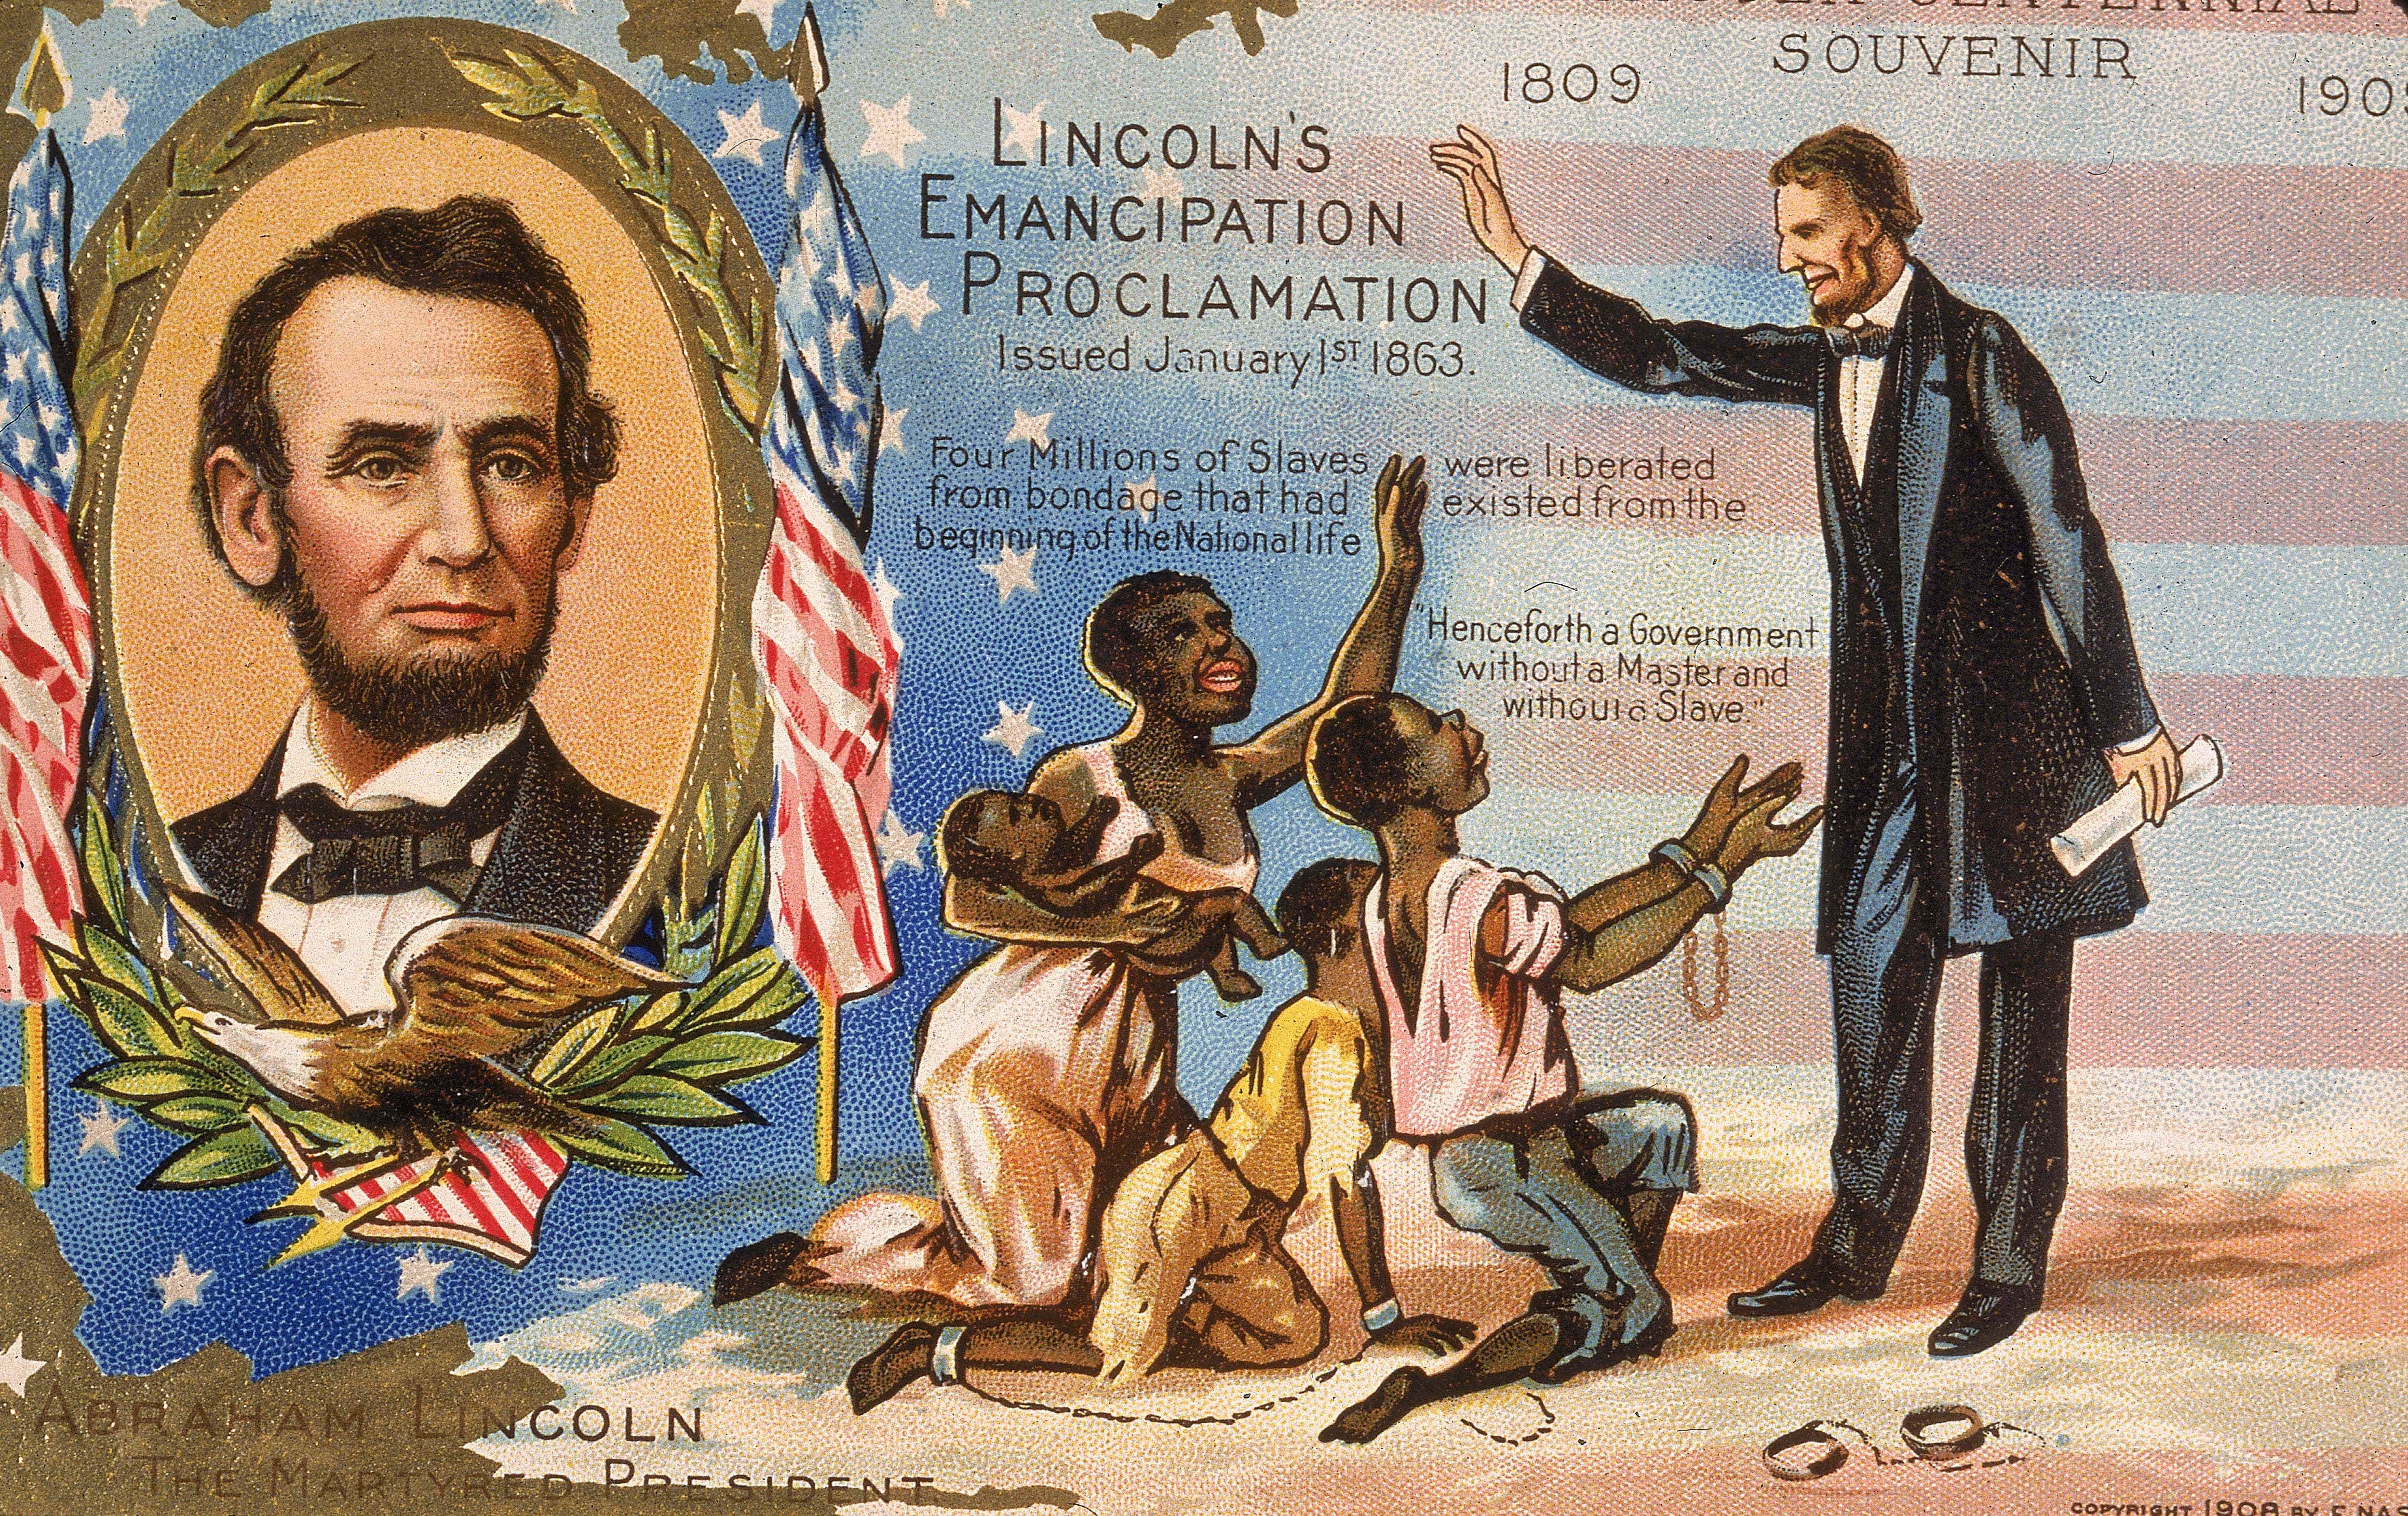 Postkarte zu Ehren von Präsident Abraham Lincoln (1809-1865) für seine Emanzipationsproklamation zur Befreiung versklavter Menschen, 1863.